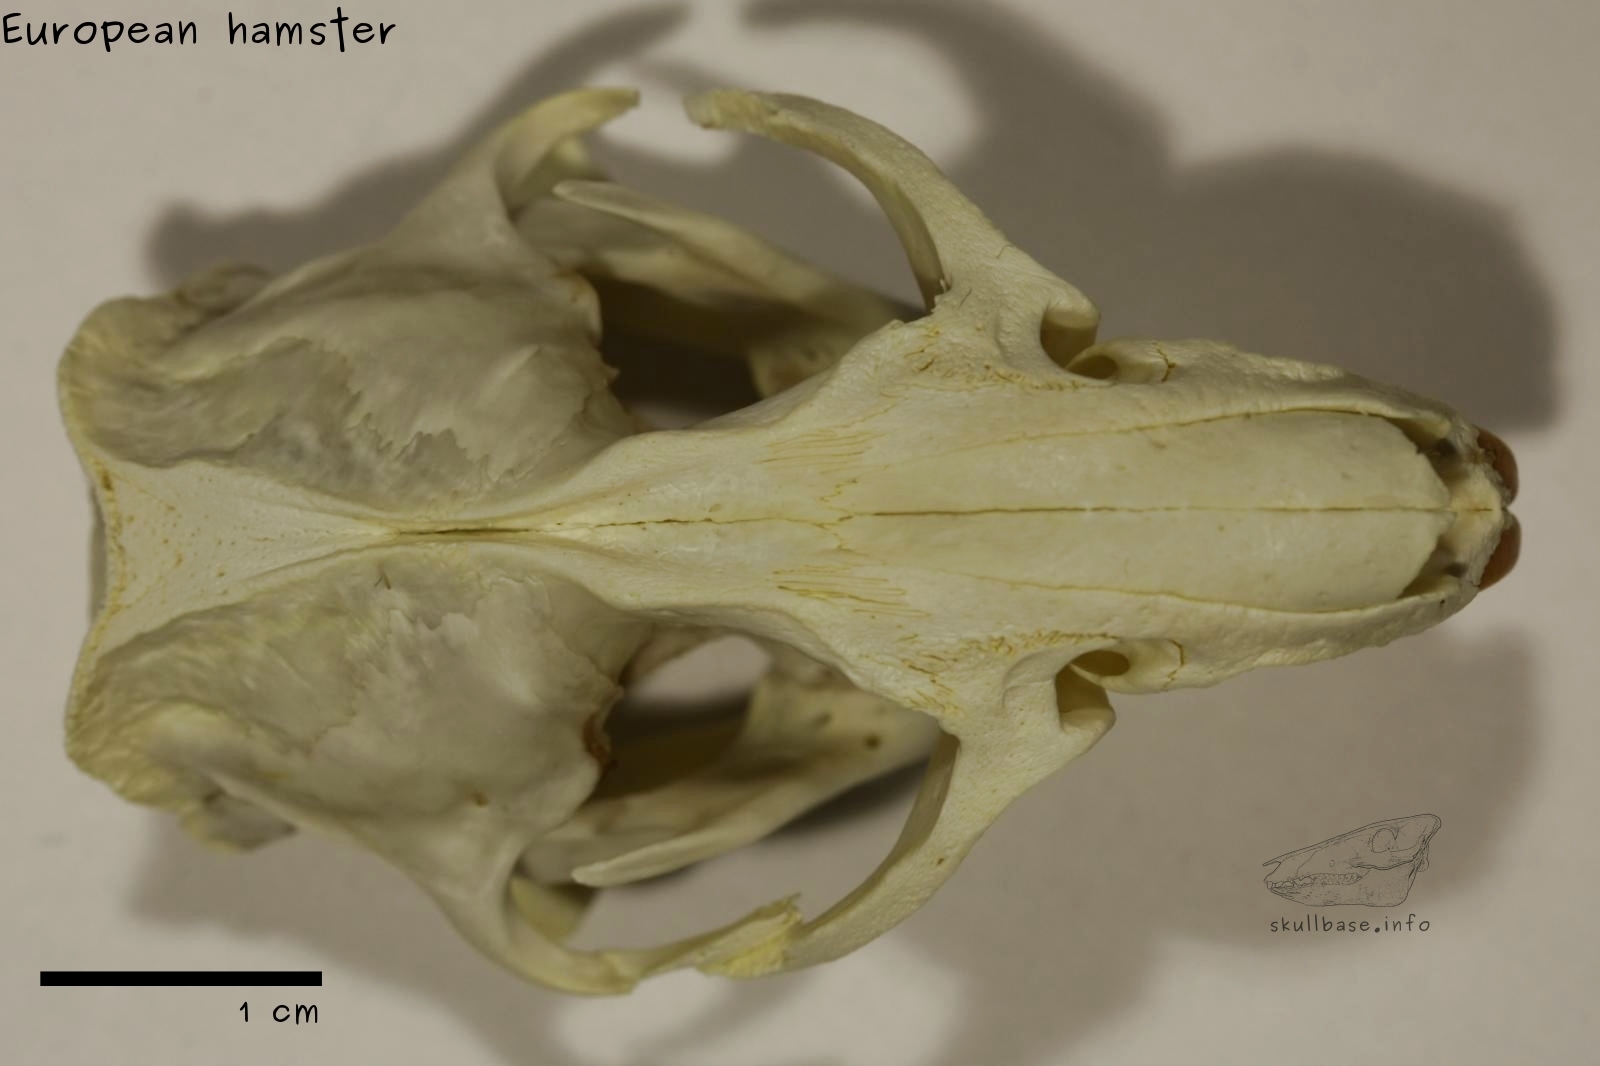 European hamster (Cricetus cricetus) skull dorsal view